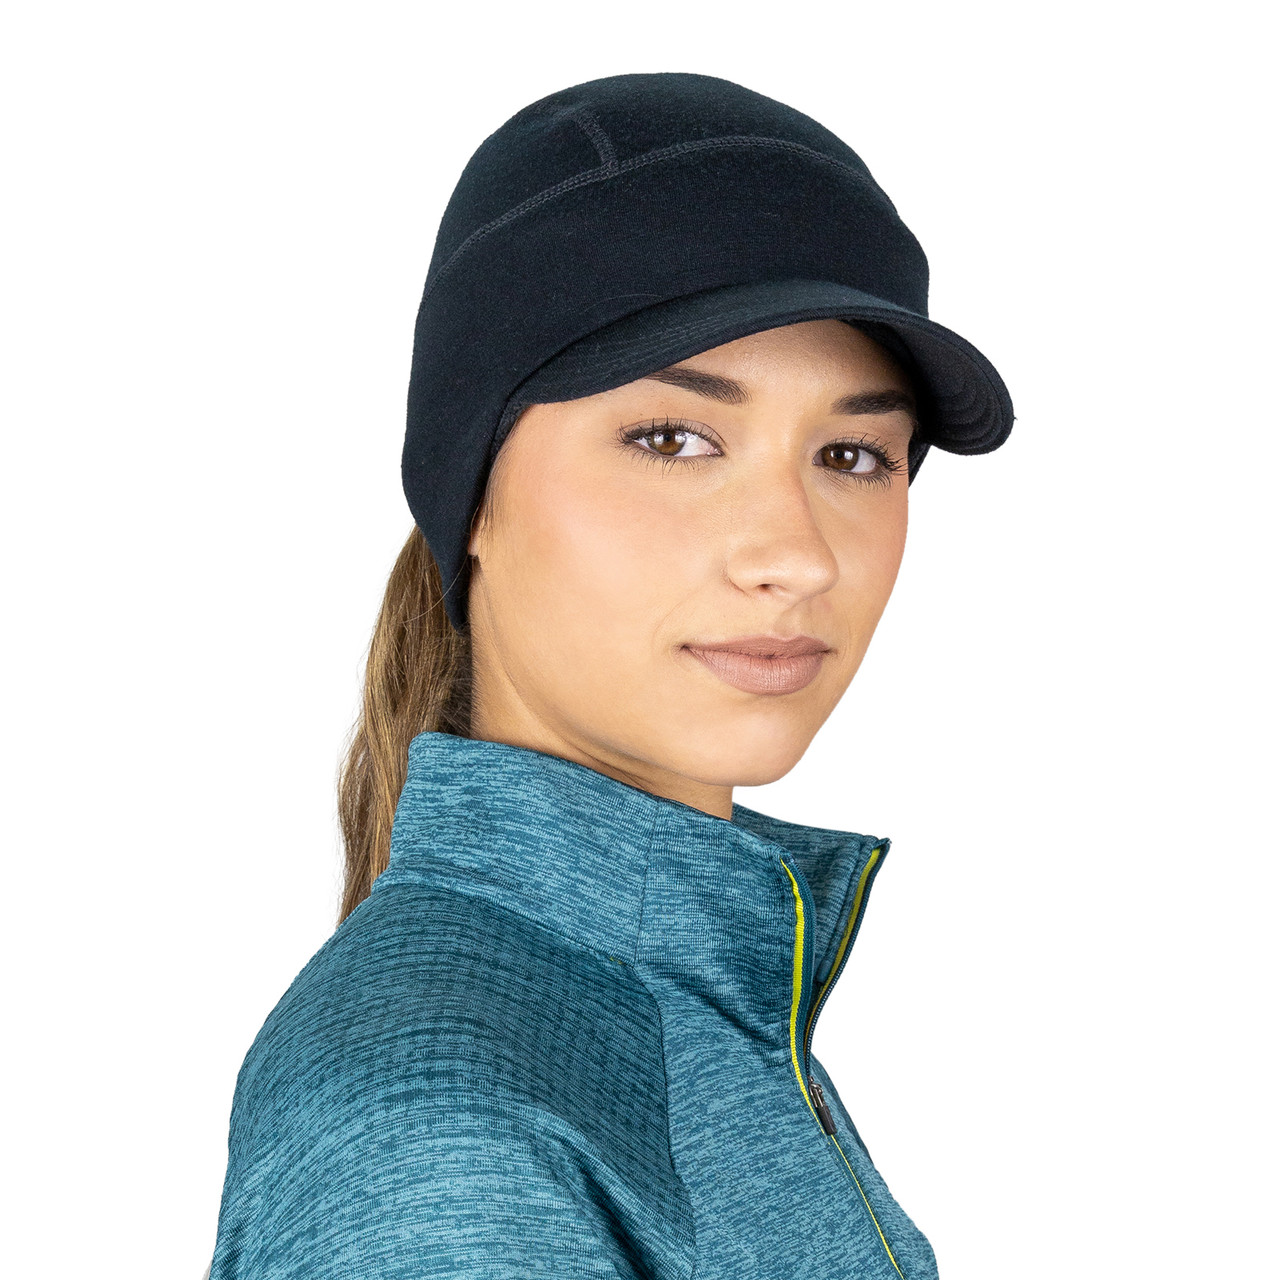 TrailHeads Women's Merino Wool Hat - Ponytail Hat for Runners